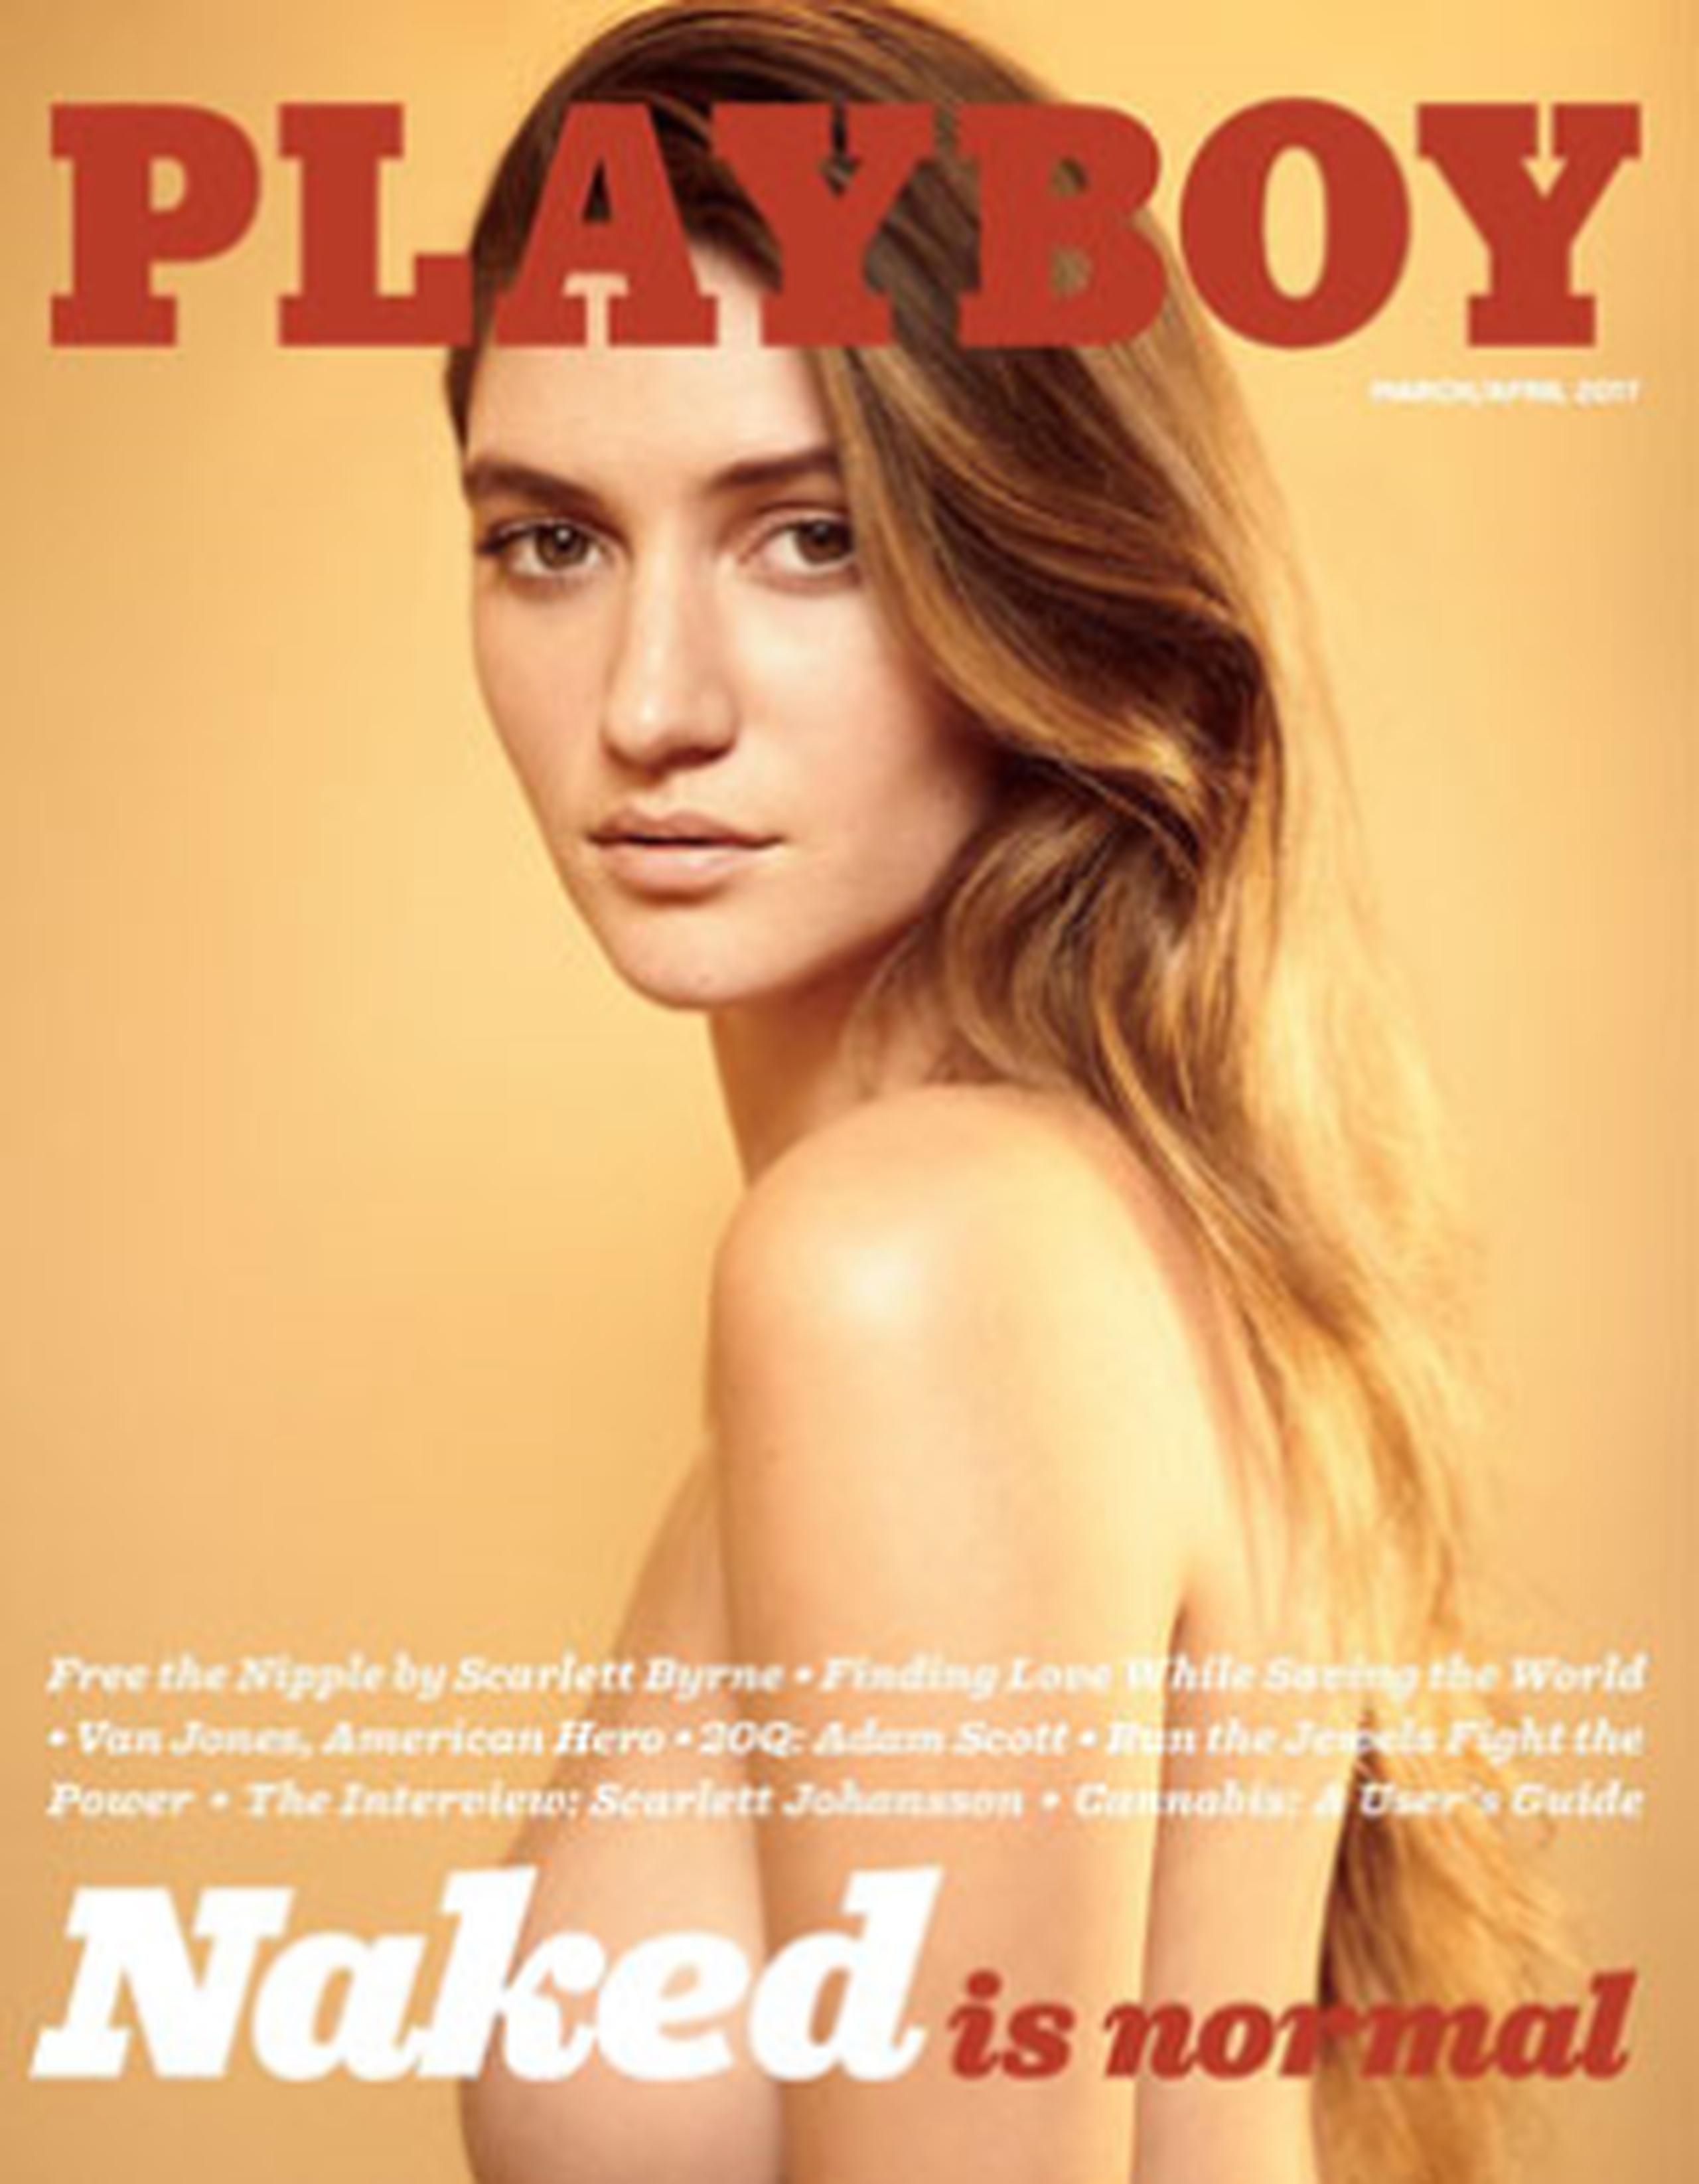 De esta manera, el número correspondiente a marzo y abril de Playboy contará con una portada protagonizada por la modelo Elizabeth Elam sin ropa. (AP)